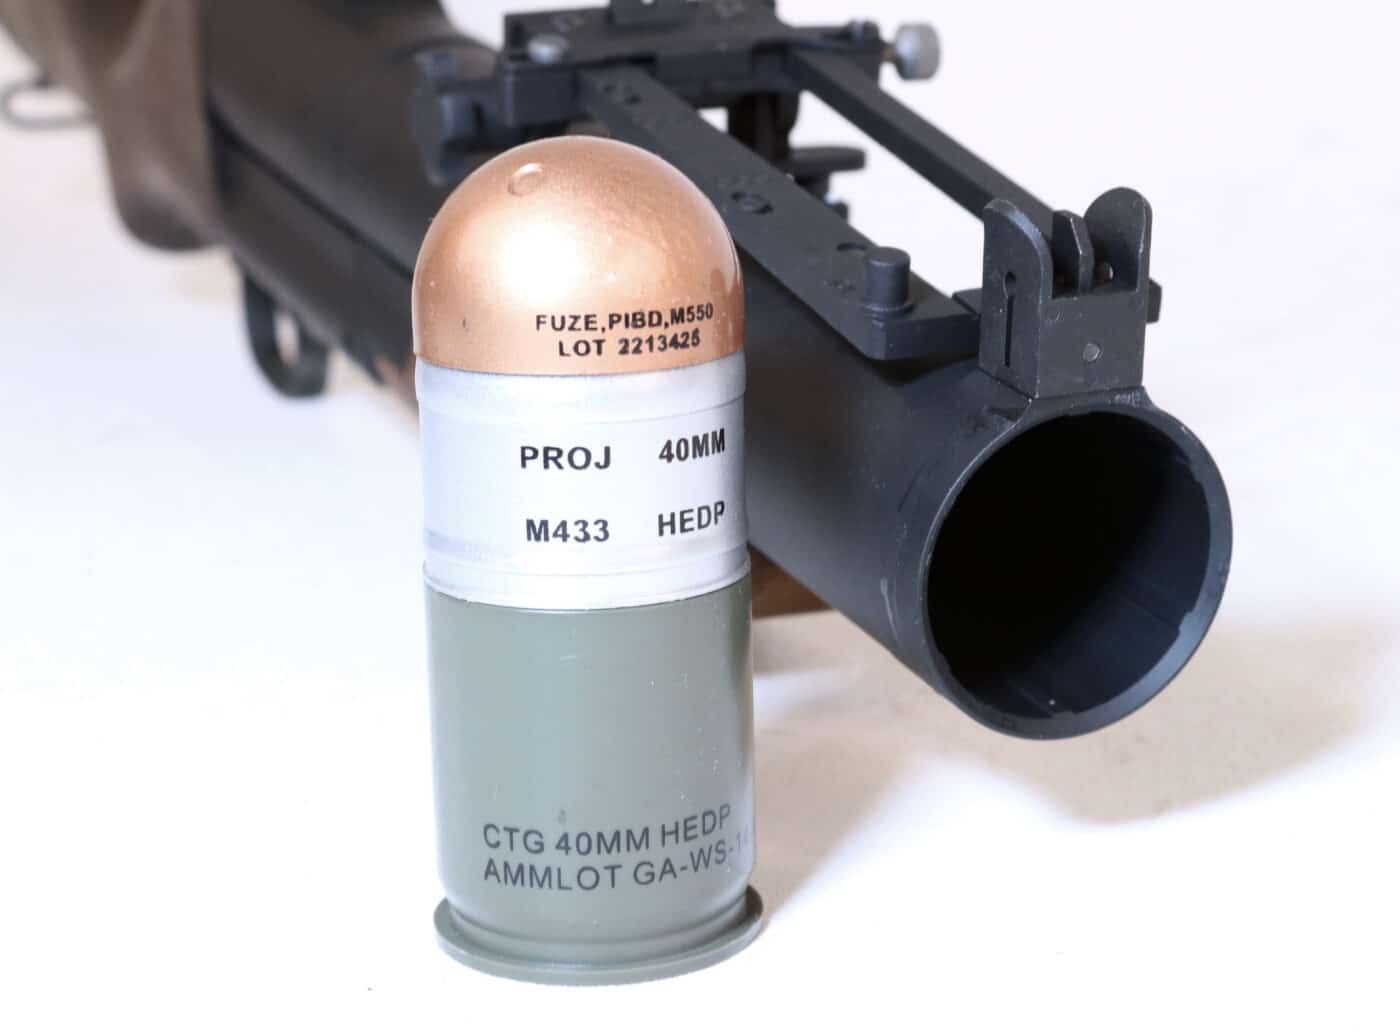 M79 grenades